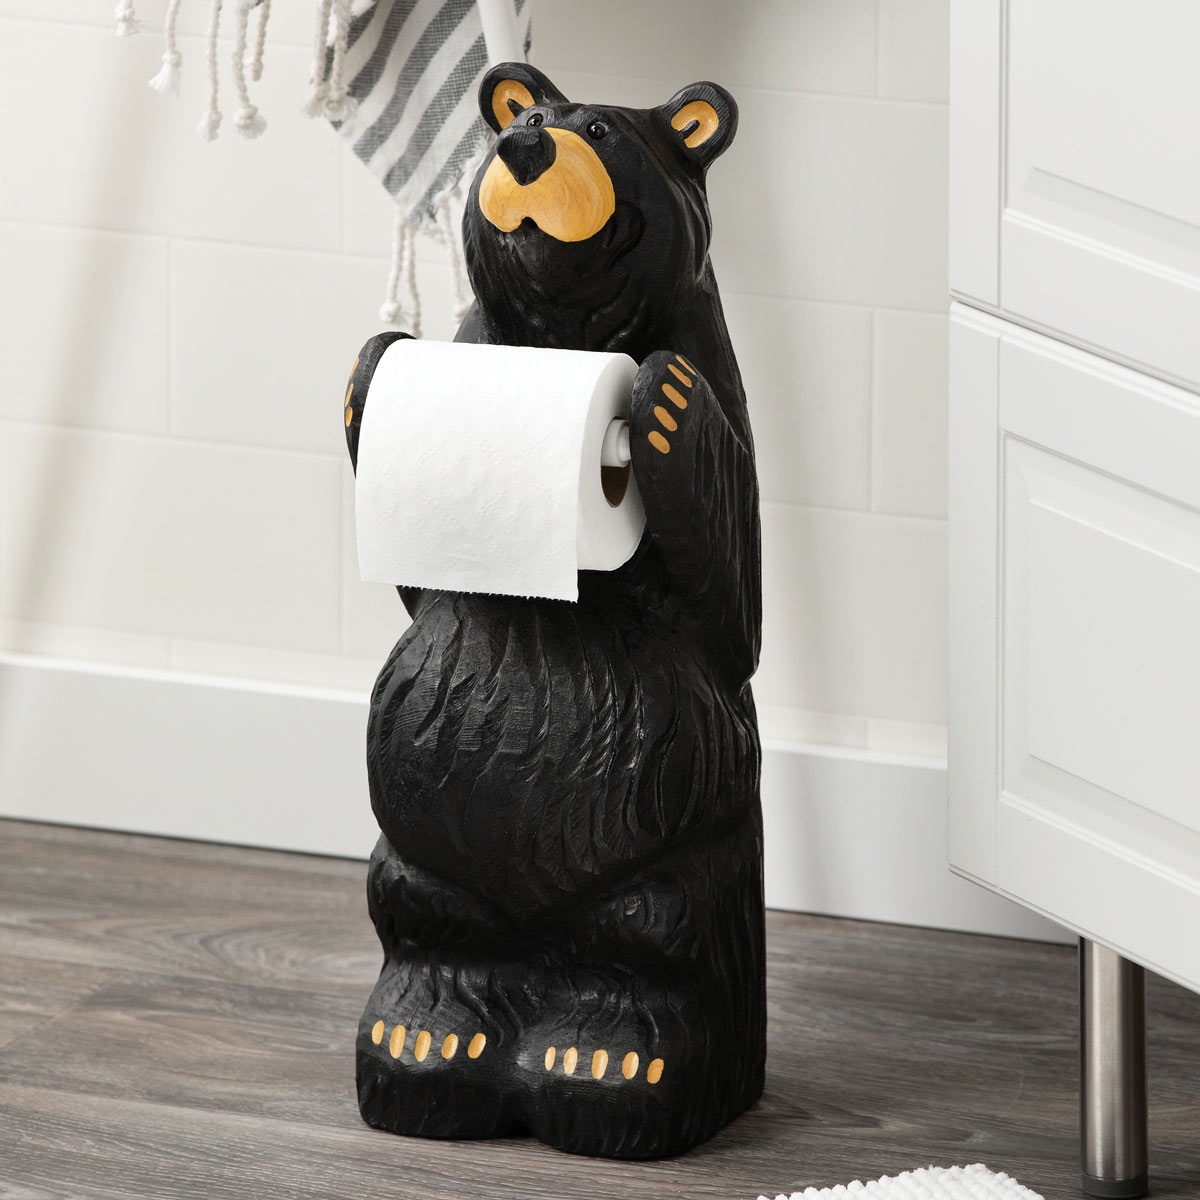 Little Bear Toilet Paper Holder - Log Cabin Decor from Black Forest Decor